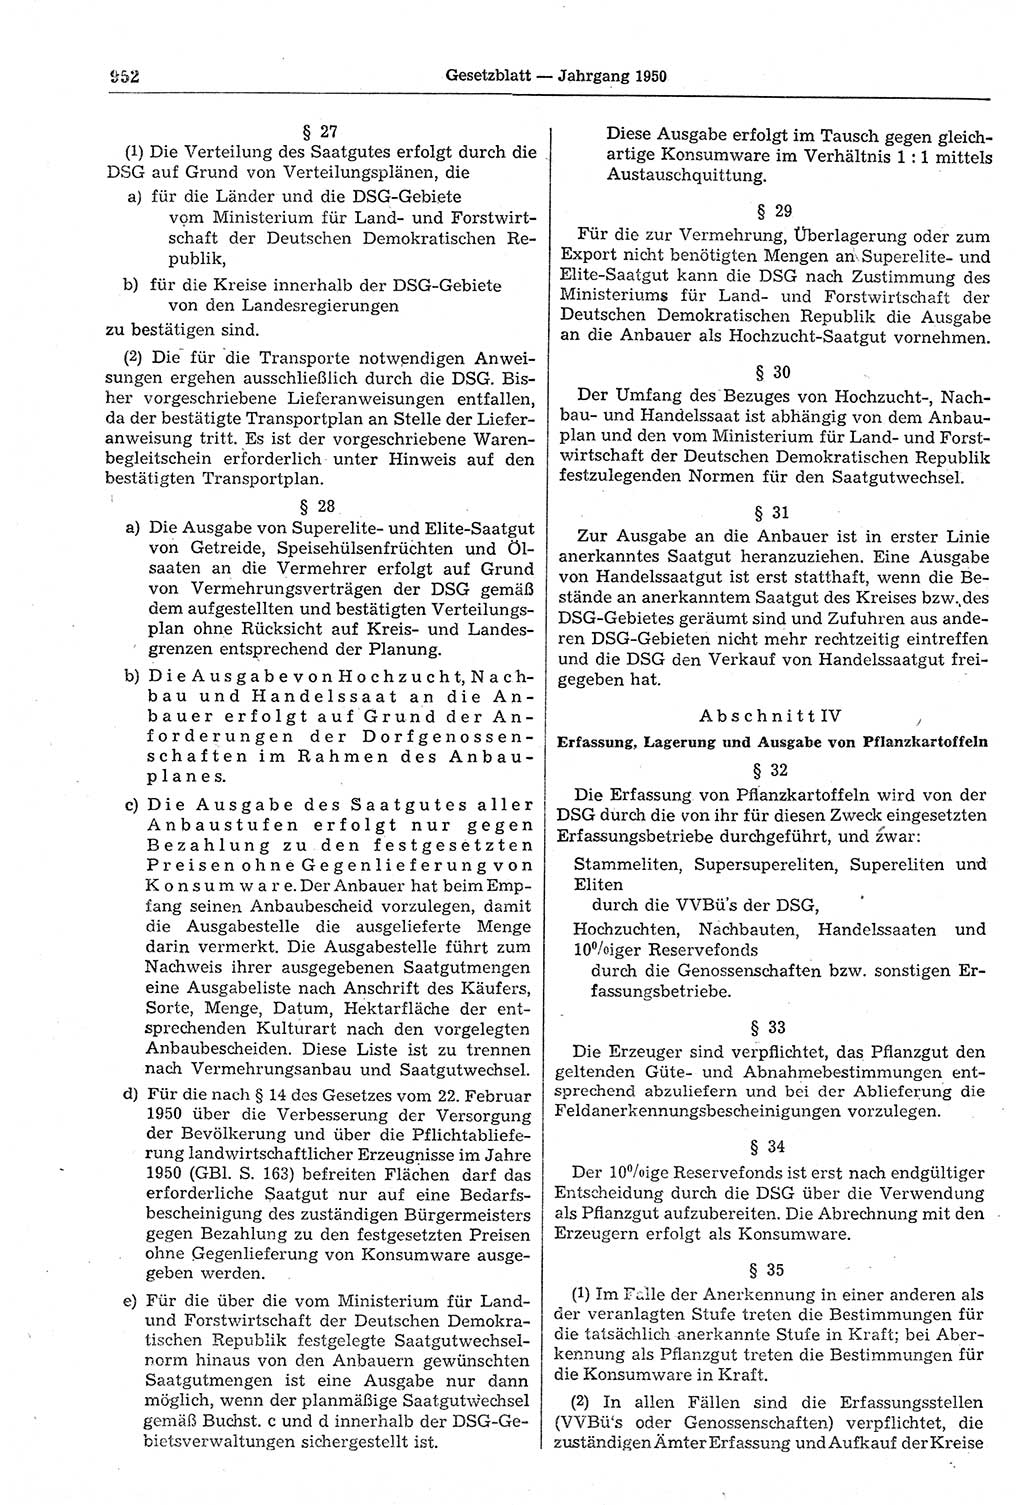 Gesetzblatt (GBl.) der Deutschen Demokratischen Republik (DDR) 1950, Seite 952 (GBl. DDR 1950, S. 952)